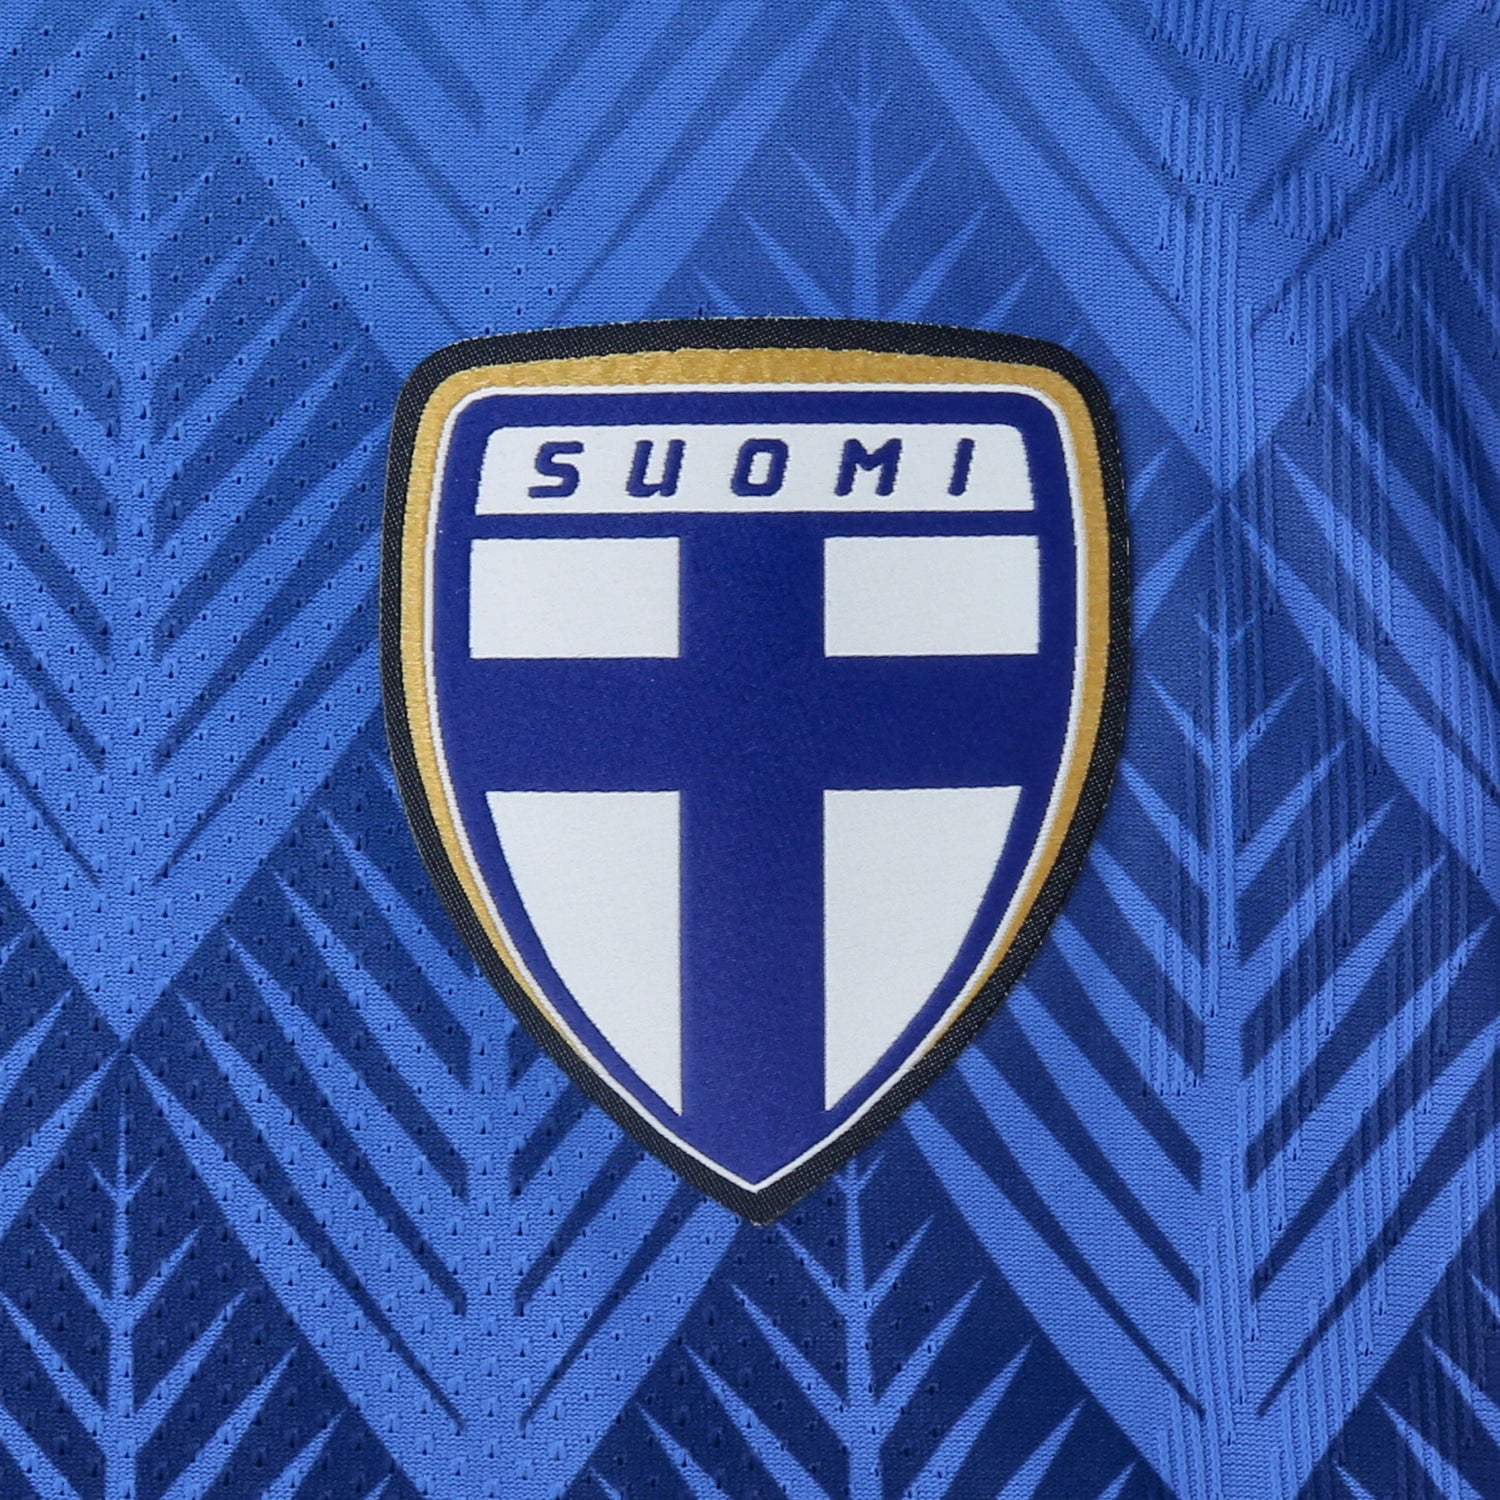 Finland Official Away Jersey 2022/23, Forss Print